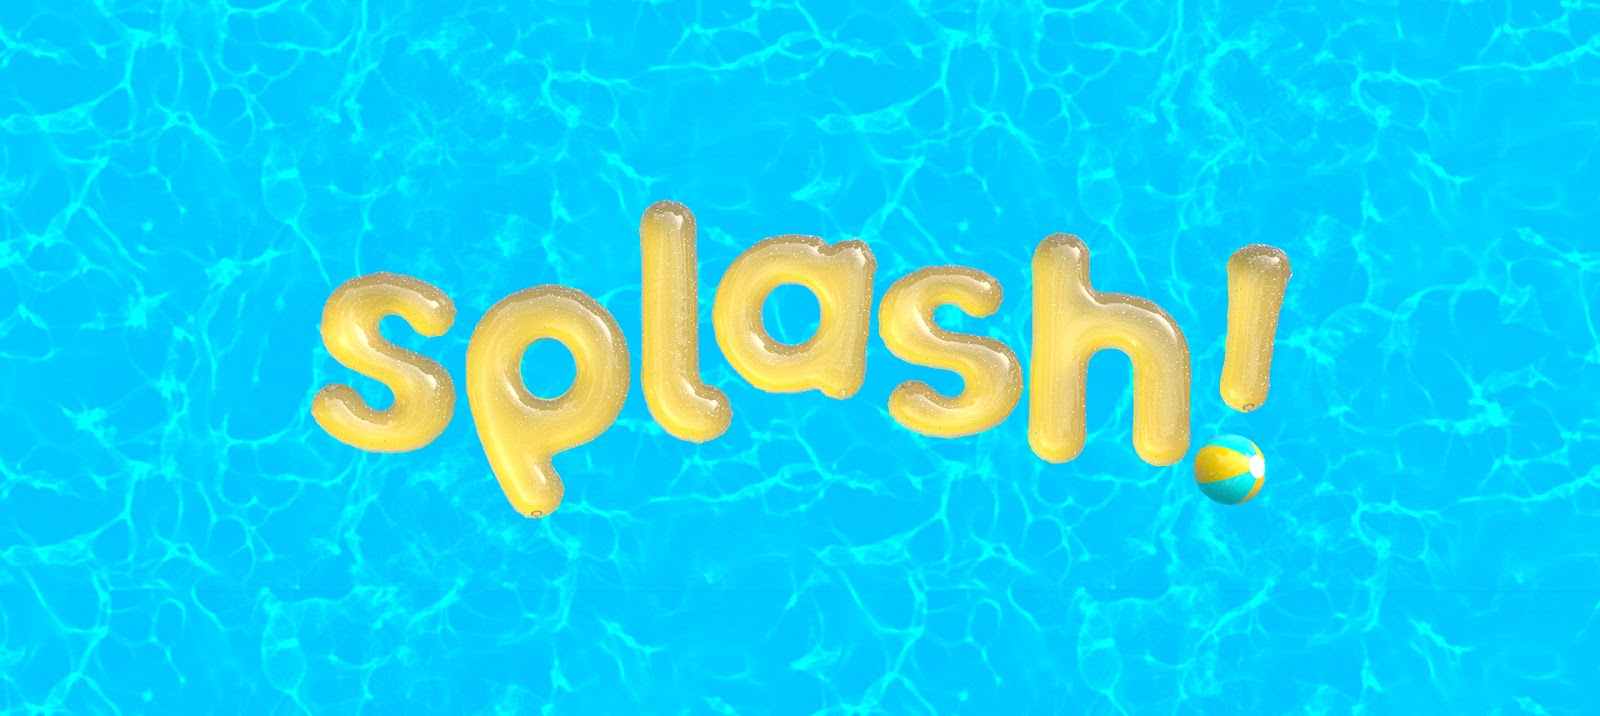 Φινάλε για το Splash - To ιδιαίτερο ευχαριστώ της Μαντούς Γαστεράτου! - Φωτογραφία 1